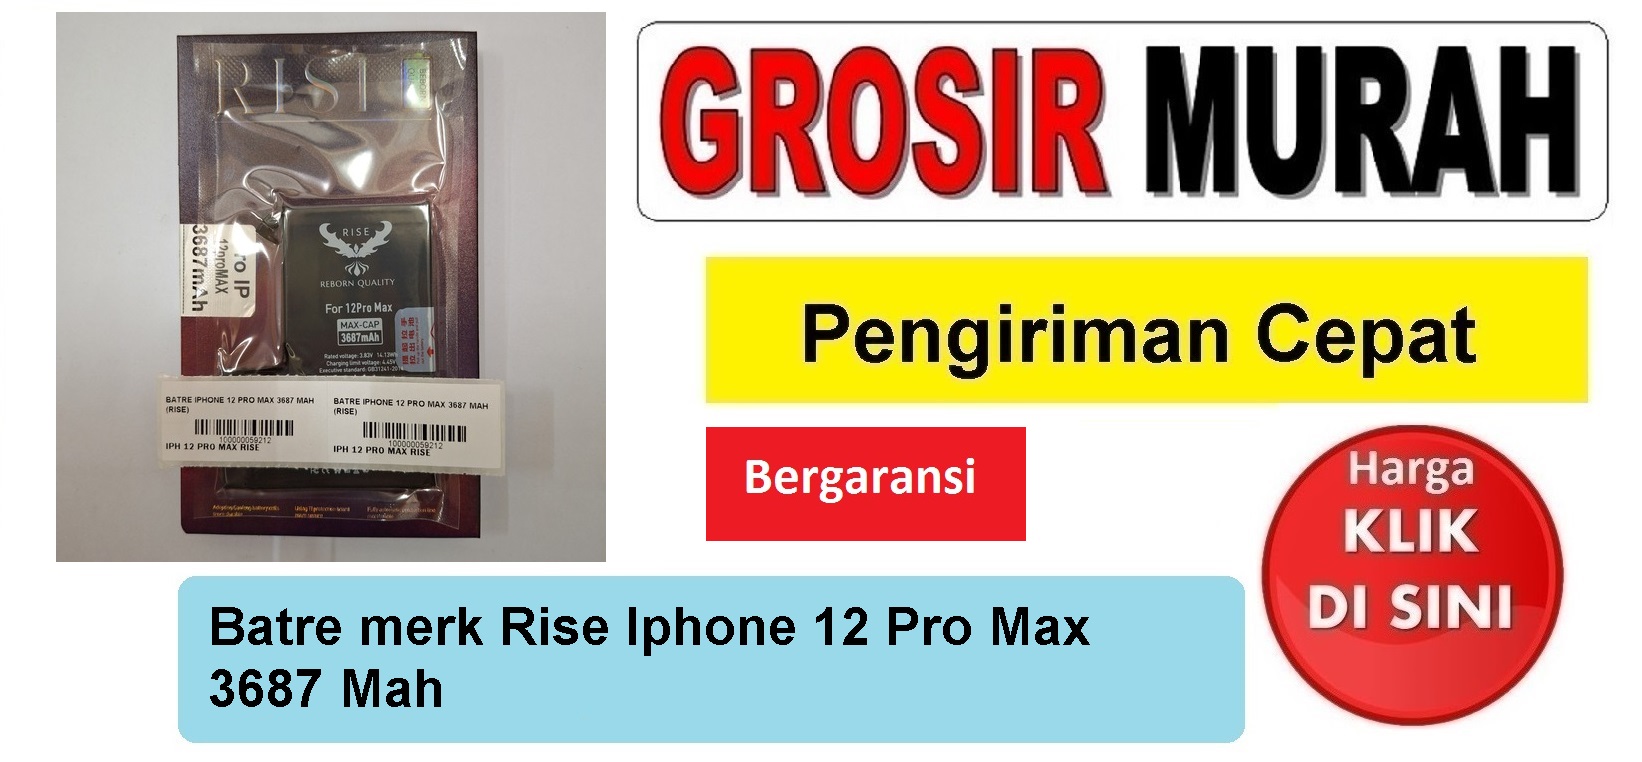 Batre merk Rise Iphone 12 Pro Max 3687 Mah Baterai Battery Bergaransi Batere